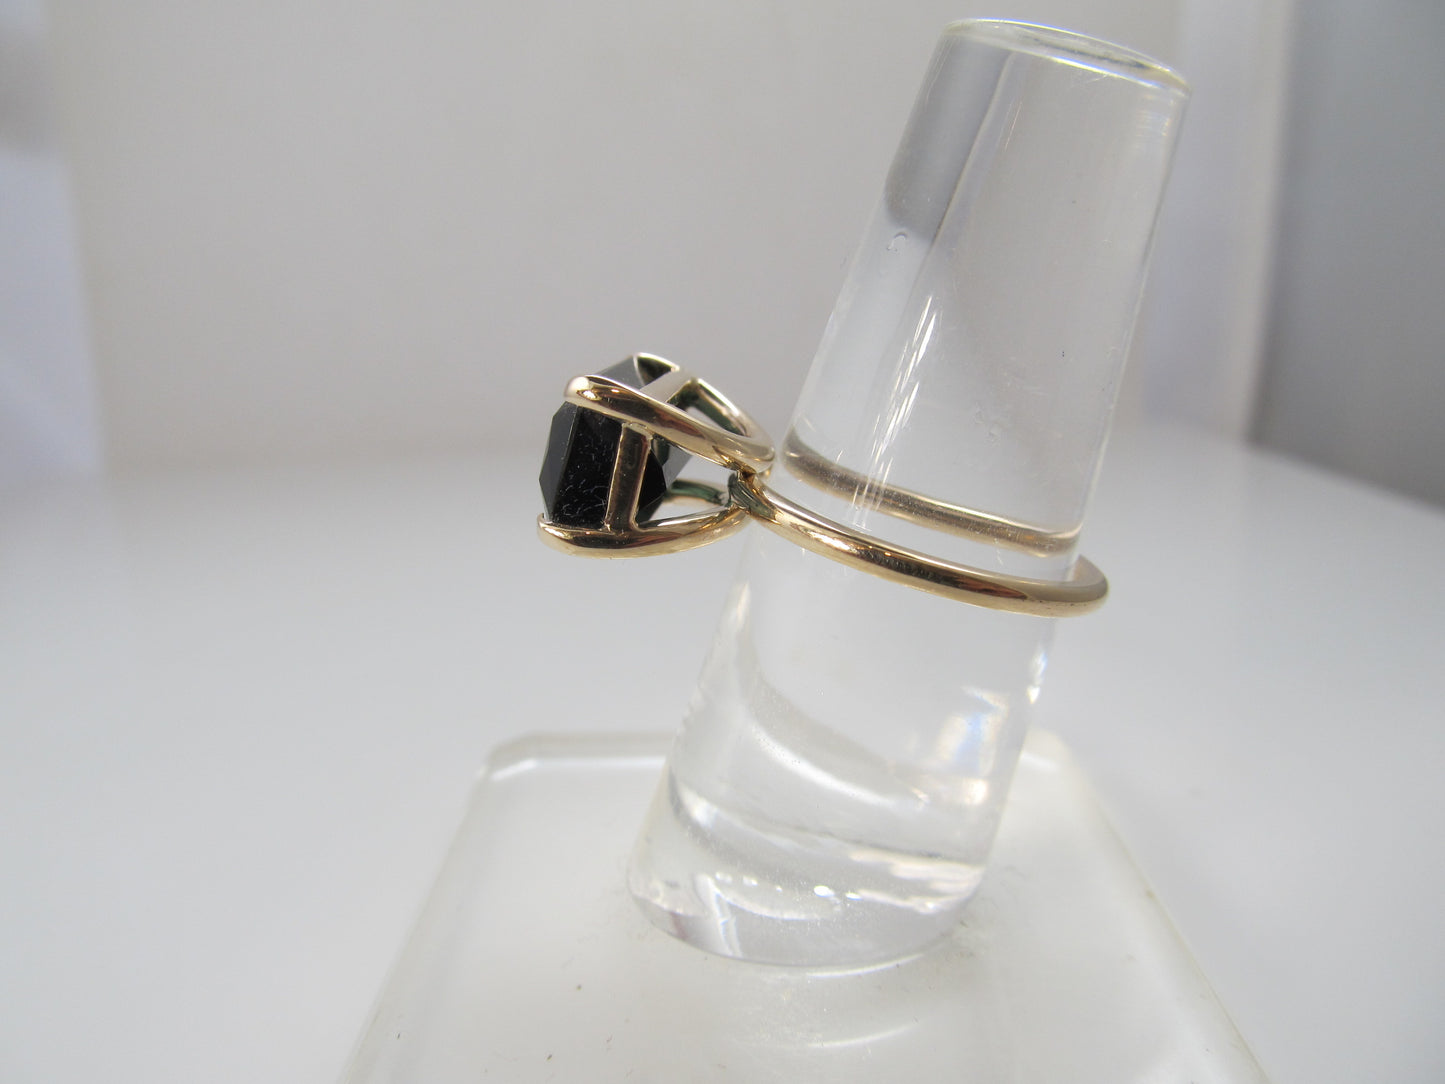 Handmade tourmaline ring